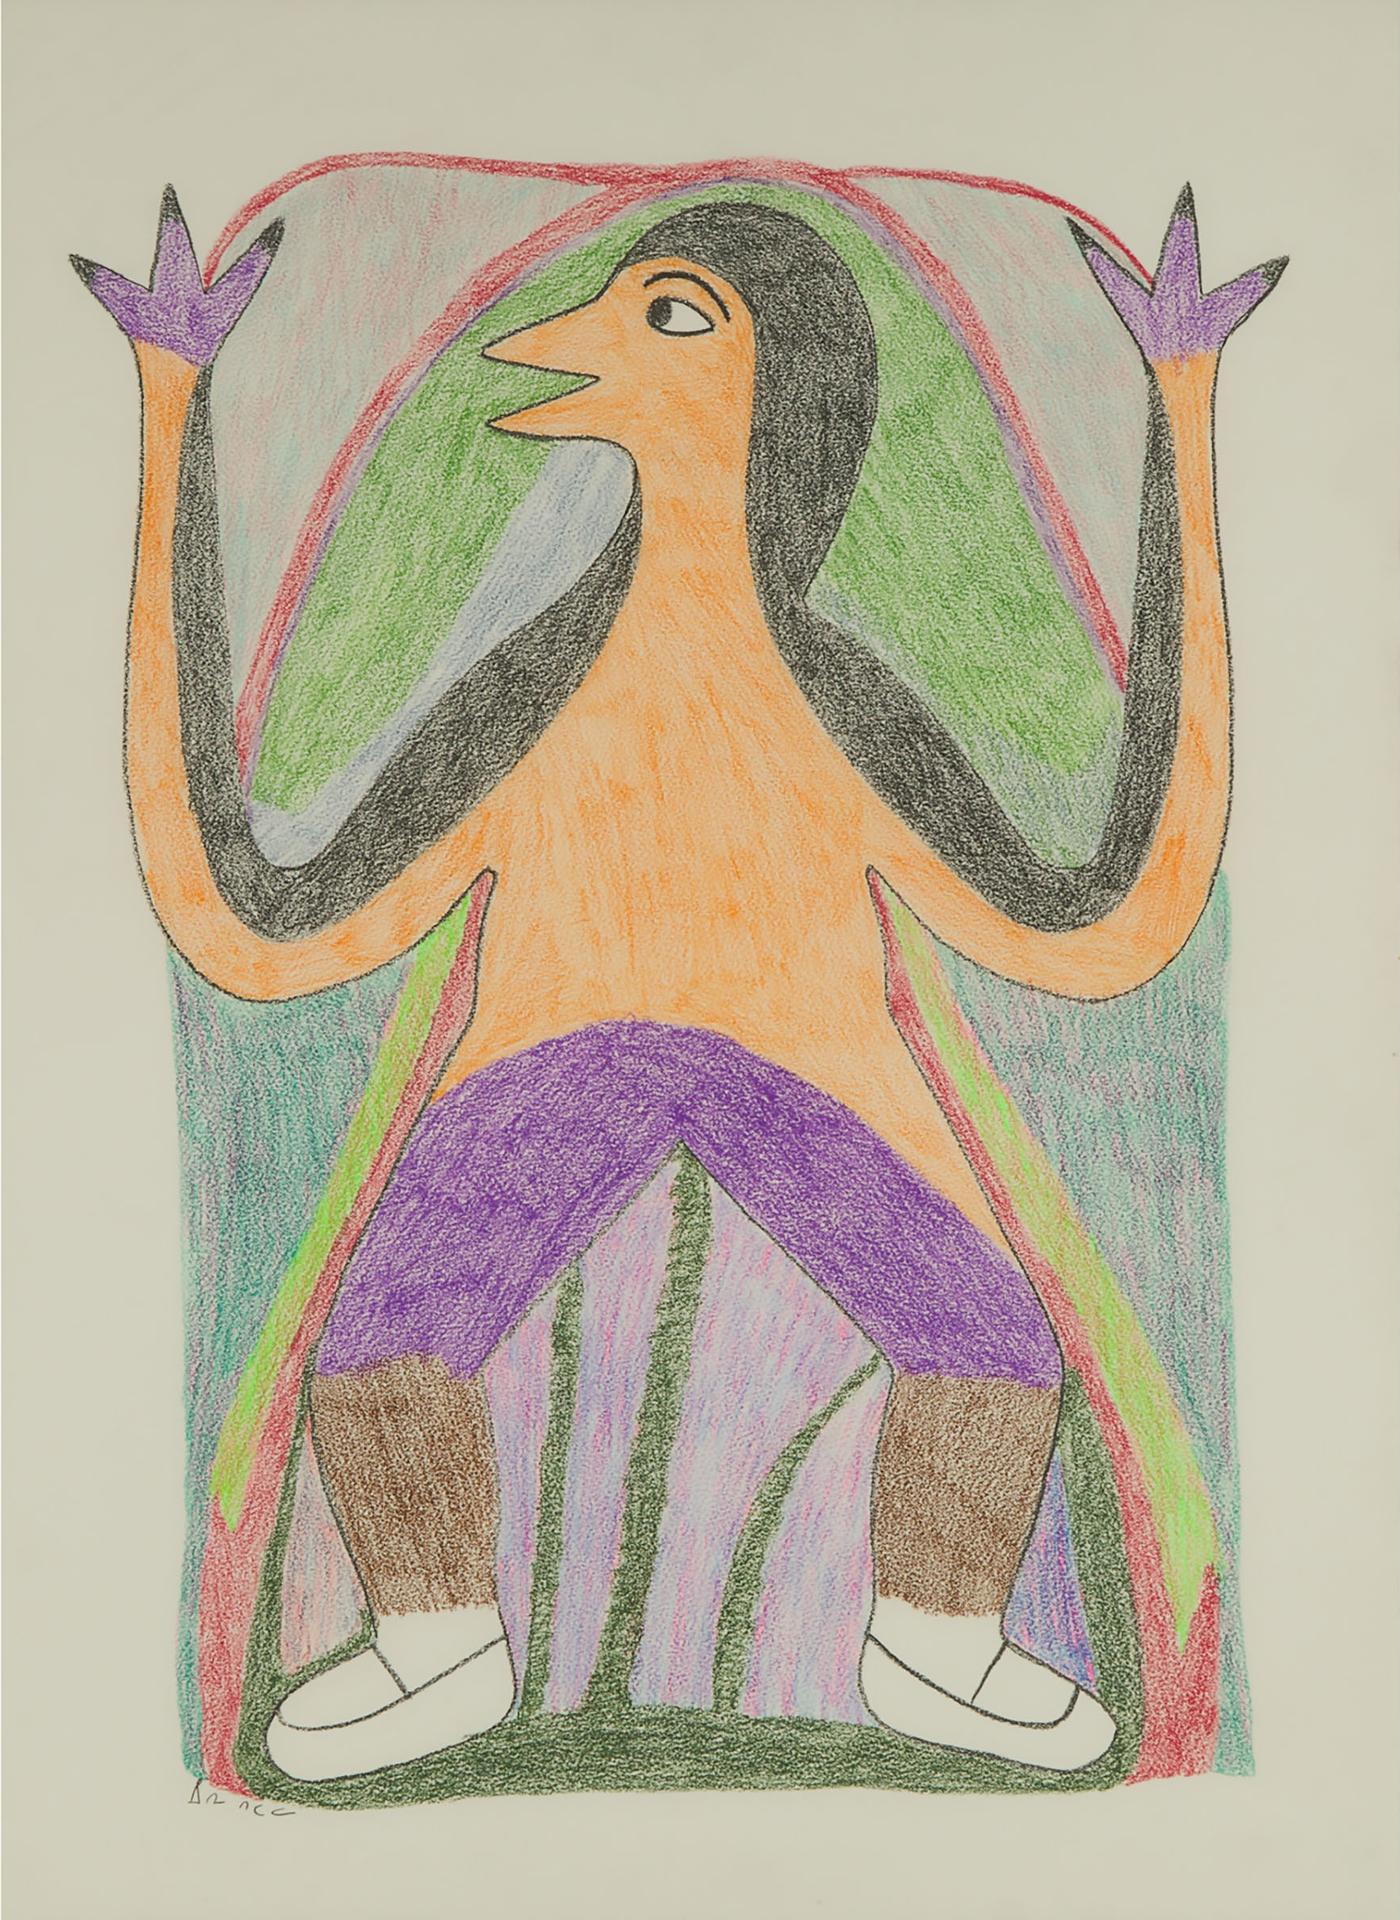 Irene Avaalaaquiaq Tiktaalaaq (1941) - Untitled (Bird Figure Transformation)